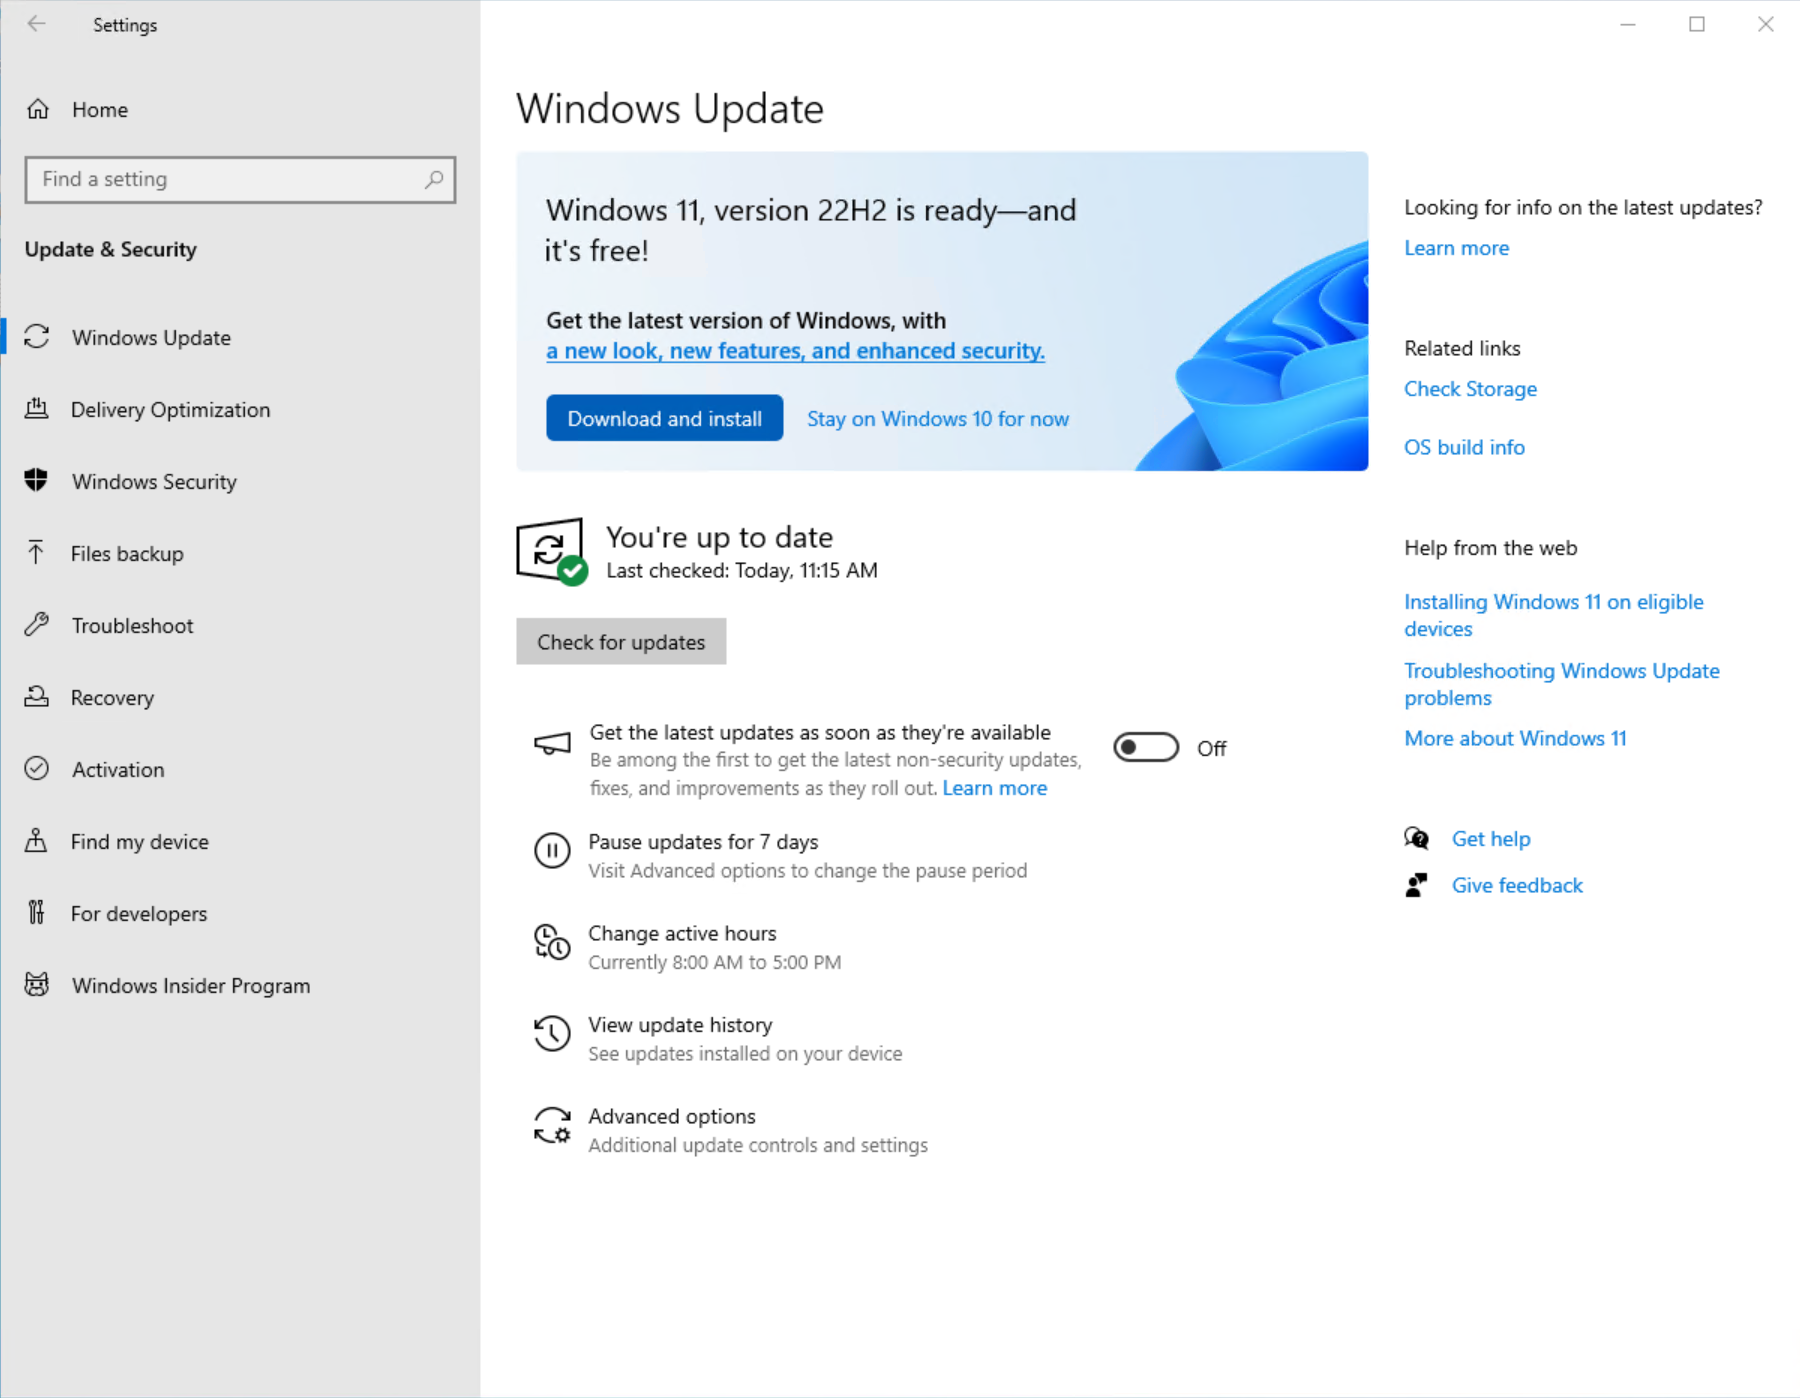 Capture d’écran de la page Windows Update dans Paramètres montrant que Windows 11 est prêt à être téléchargé et installé.